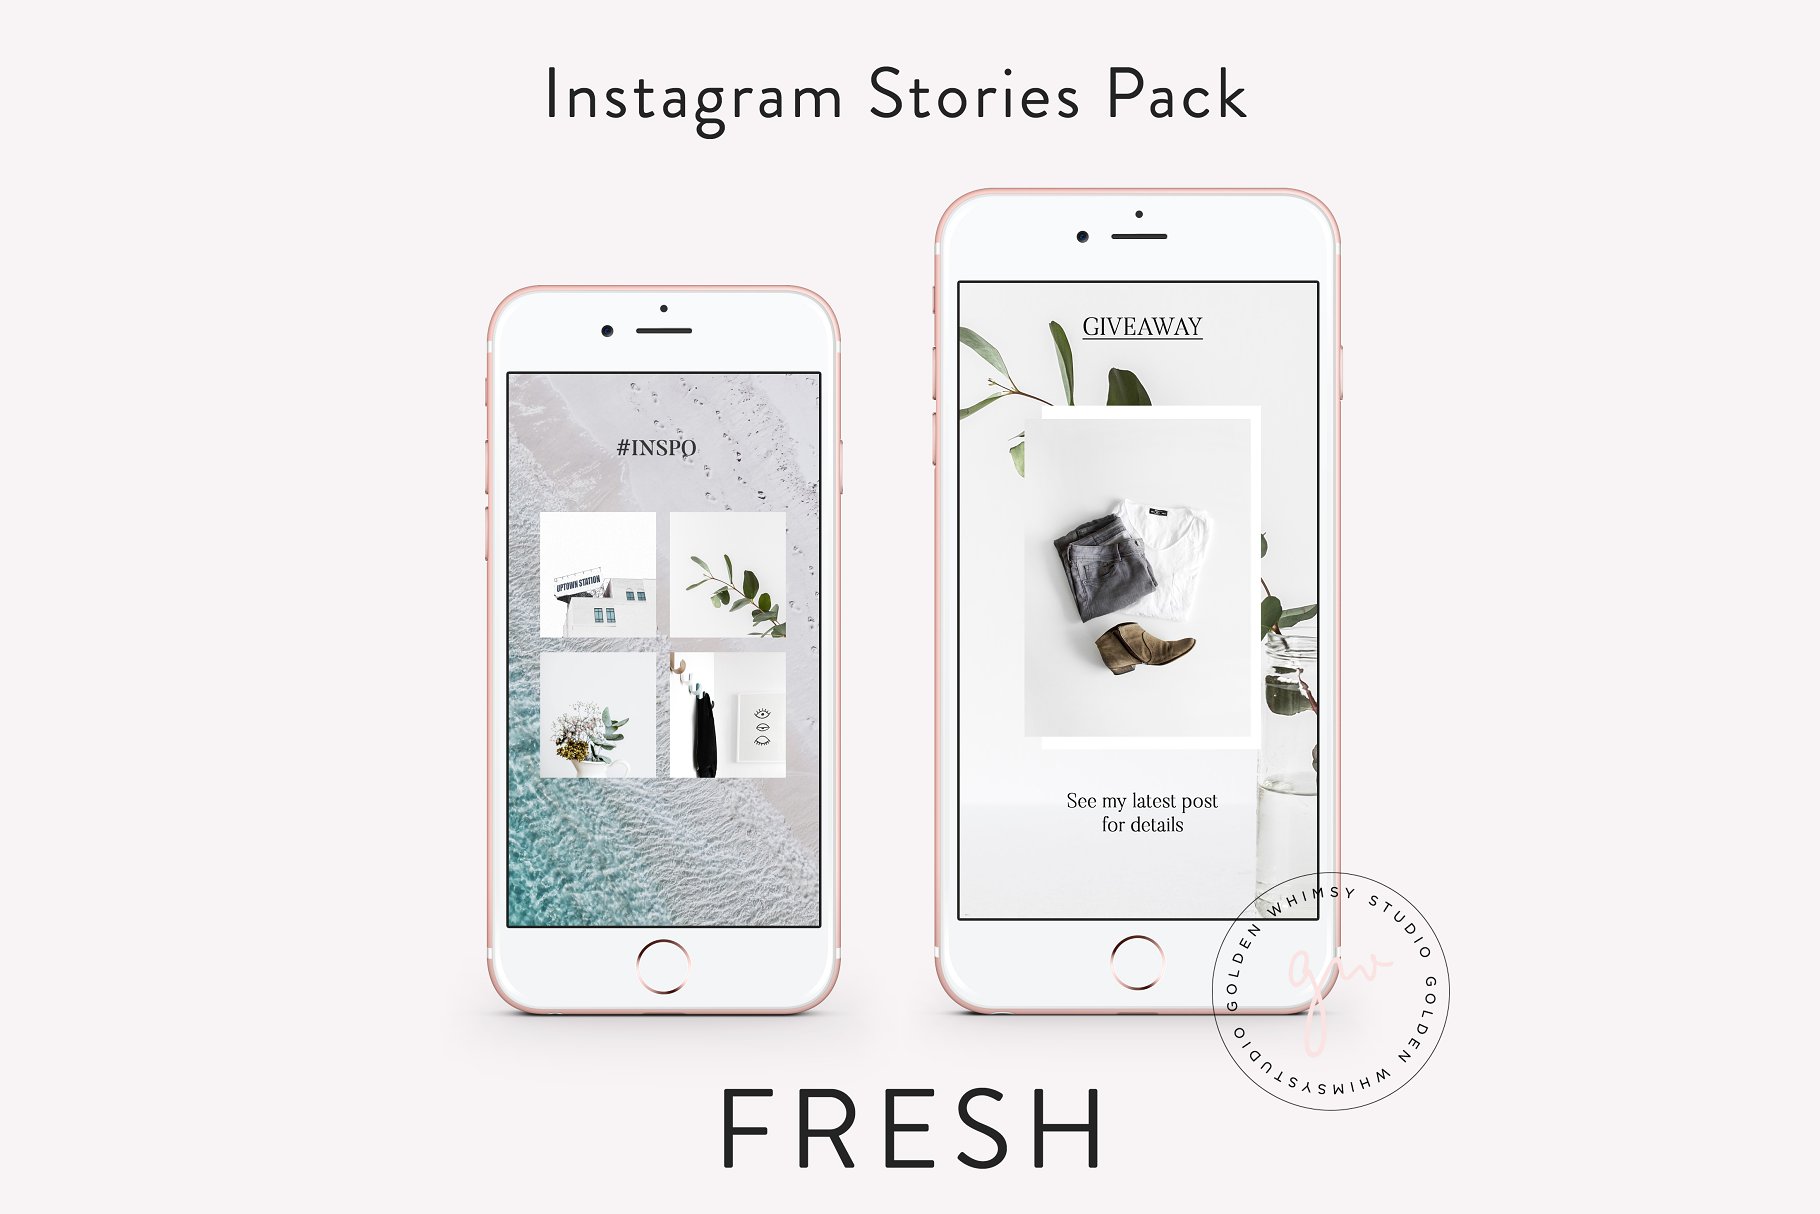 时尚干净利落的Instagram故事贴图模板第一素材精选 FRESH Insta Stories插图